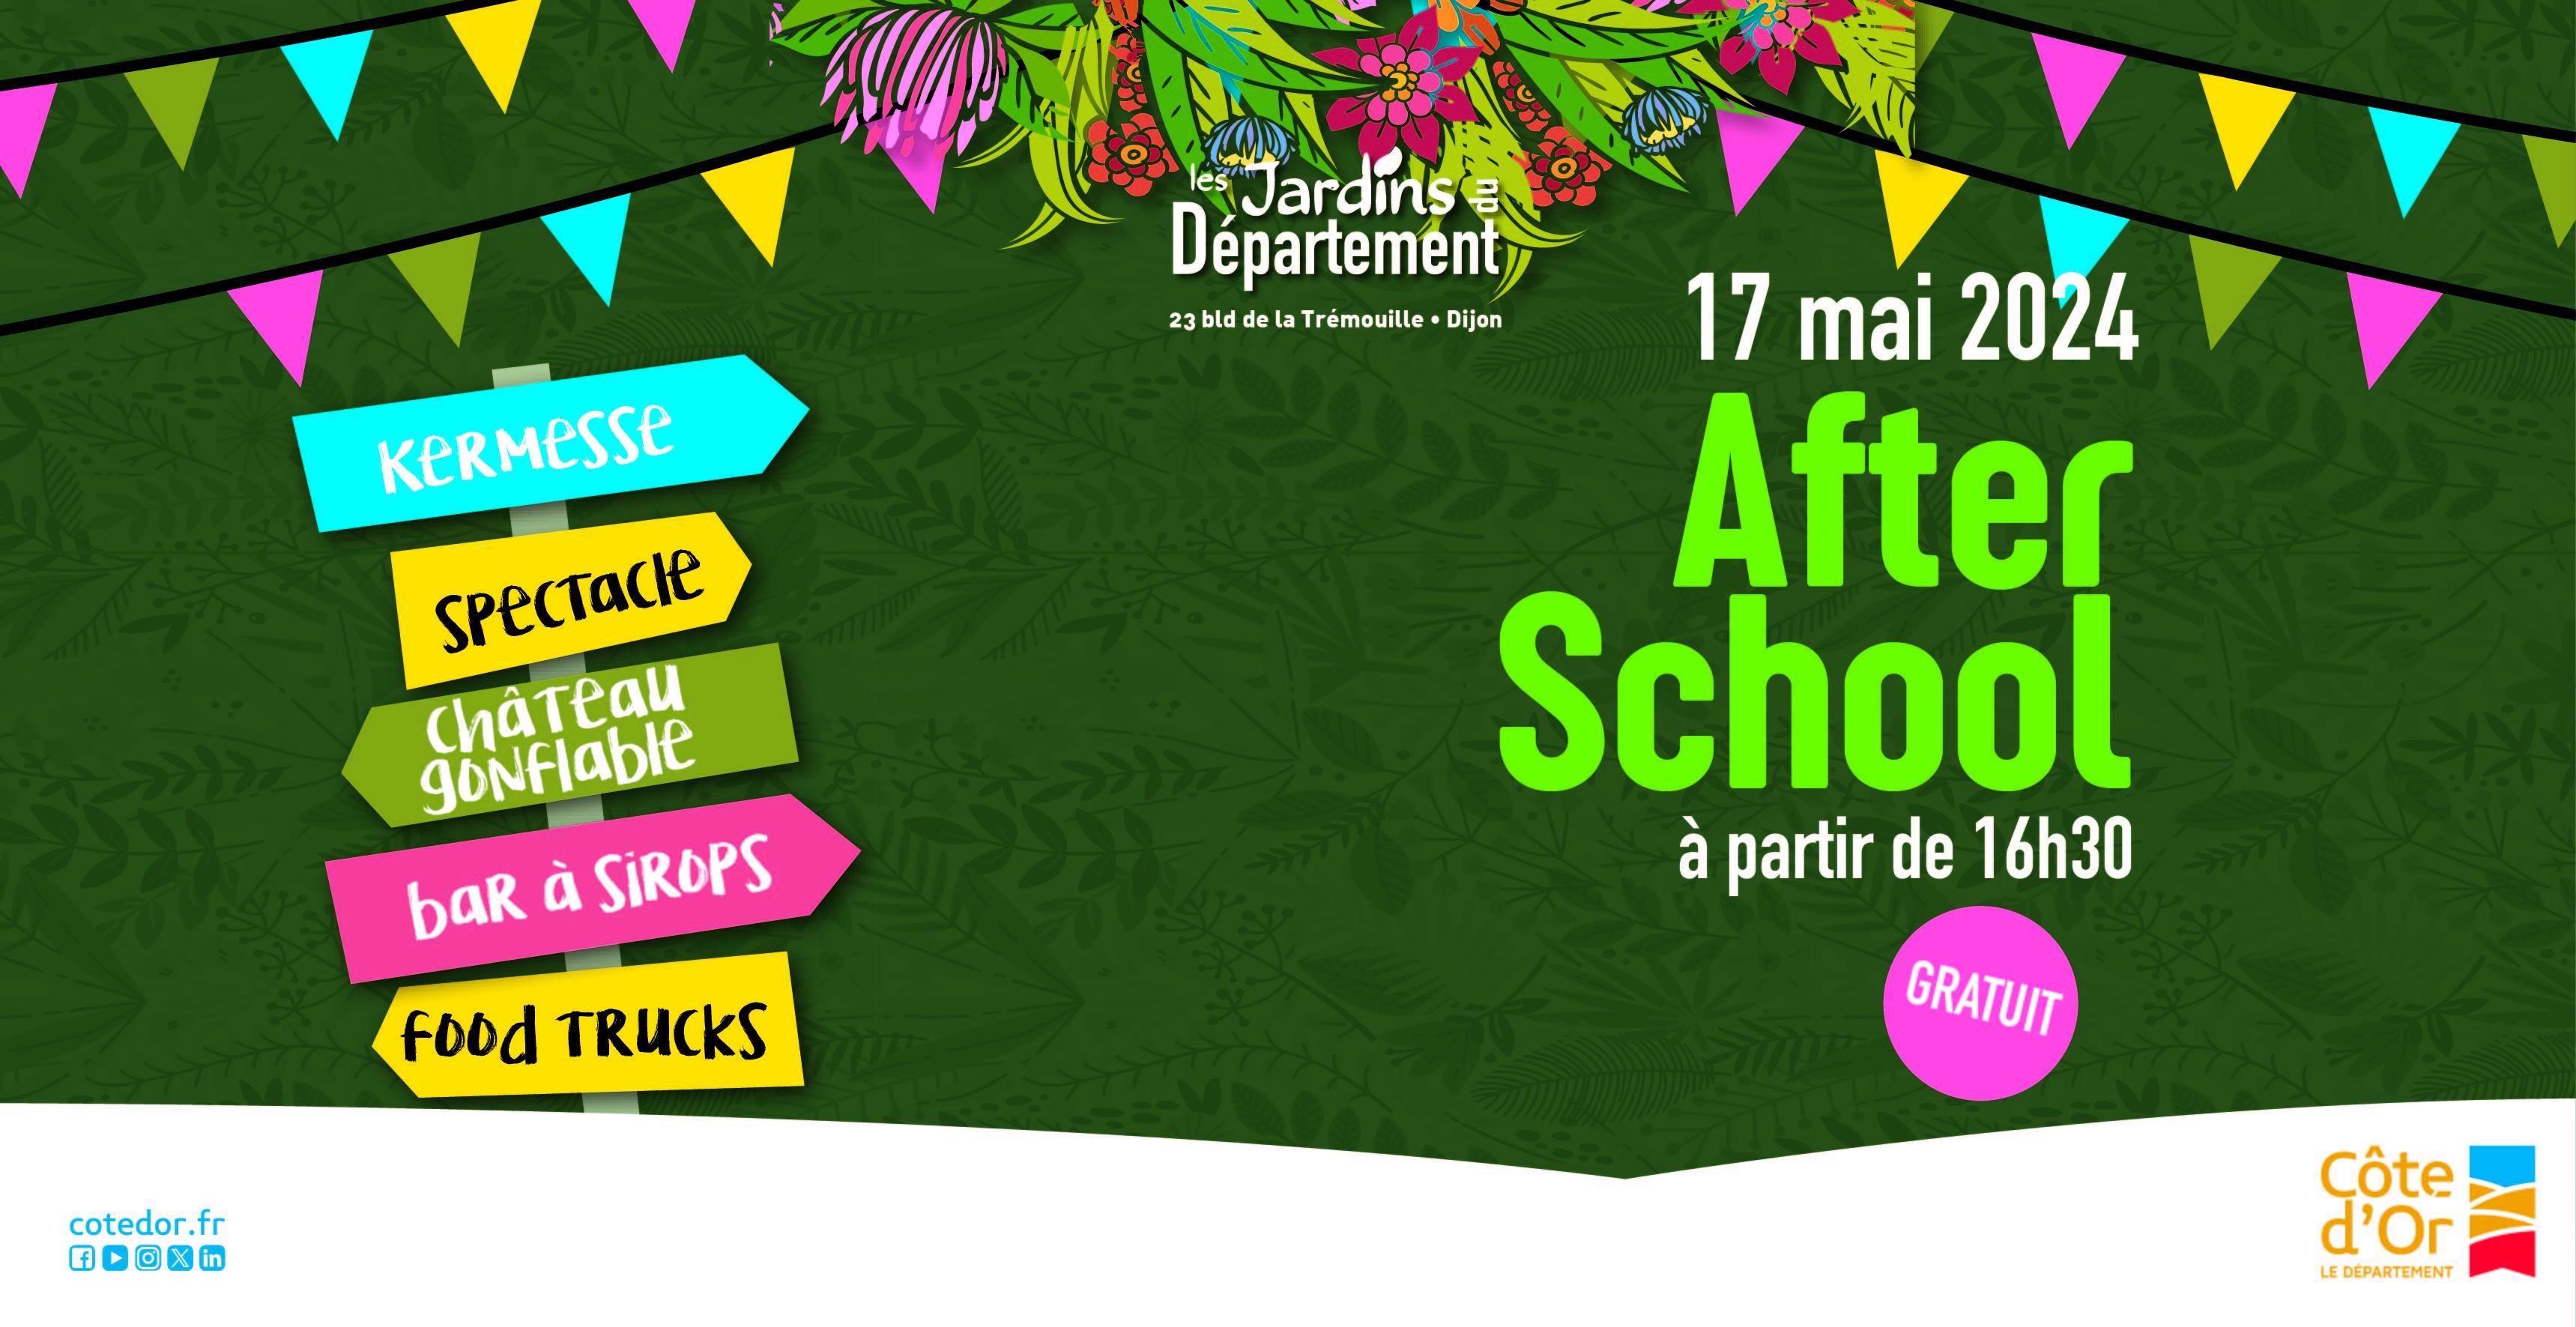 Château gonflable, jeux et spectacle à l’AfterSchool du Département à Dijon